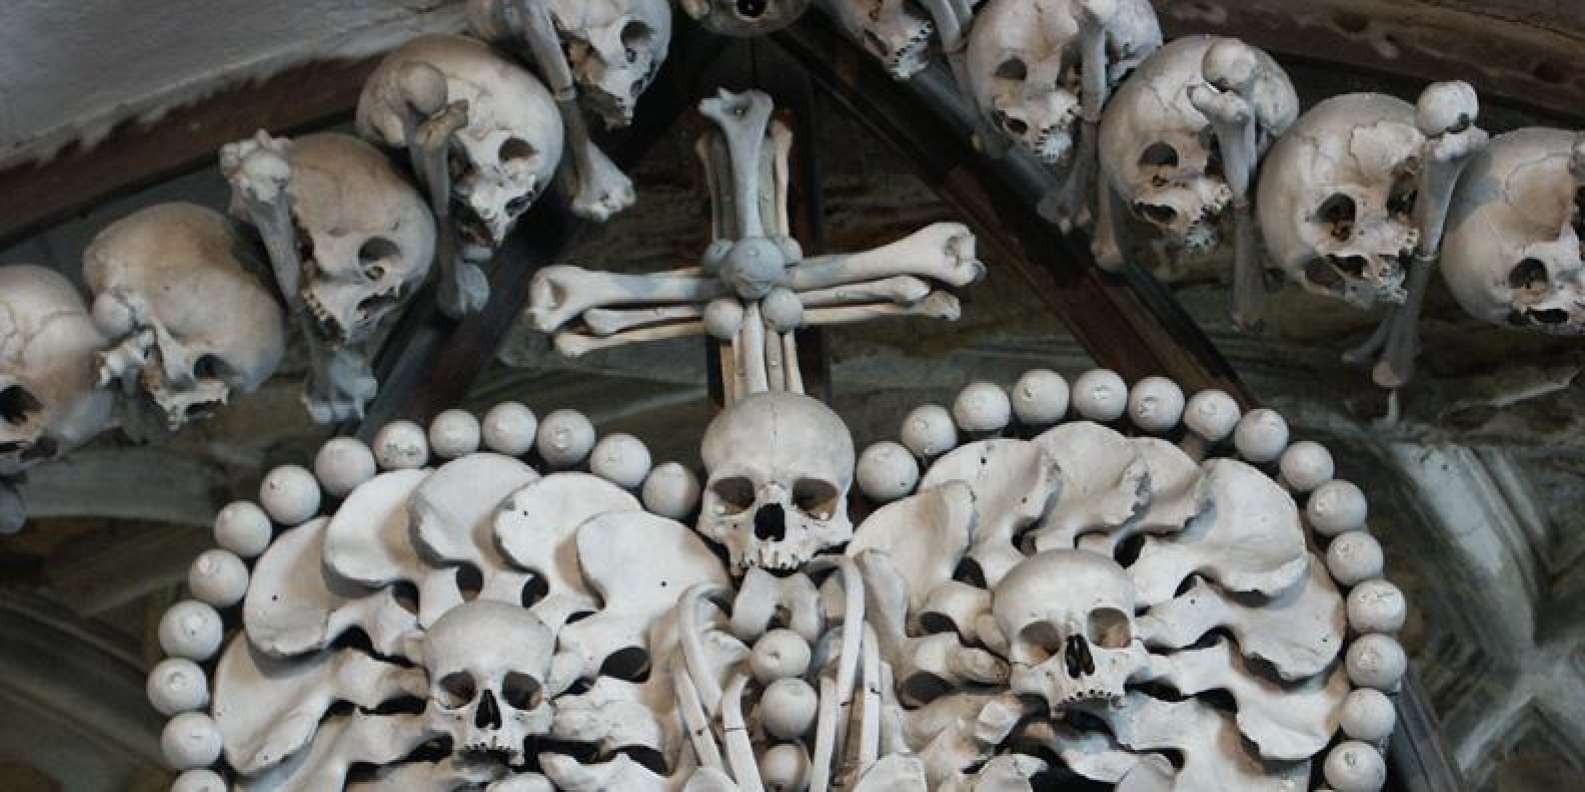 церковь костей чехии